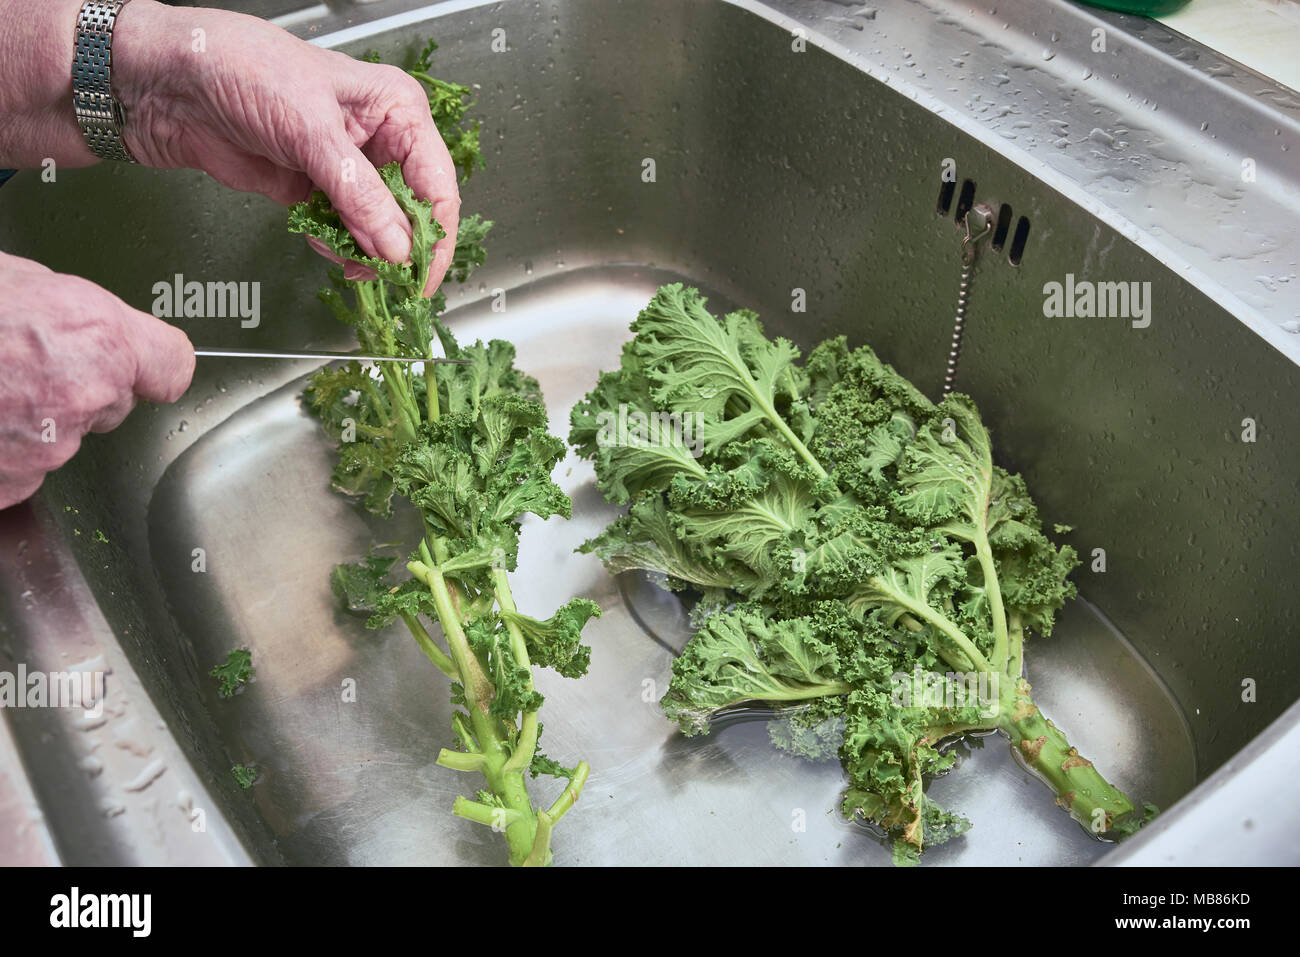 Lady waschen Kale in einem Waschbecken aus Edelstahl Stockfotografie - Alamy